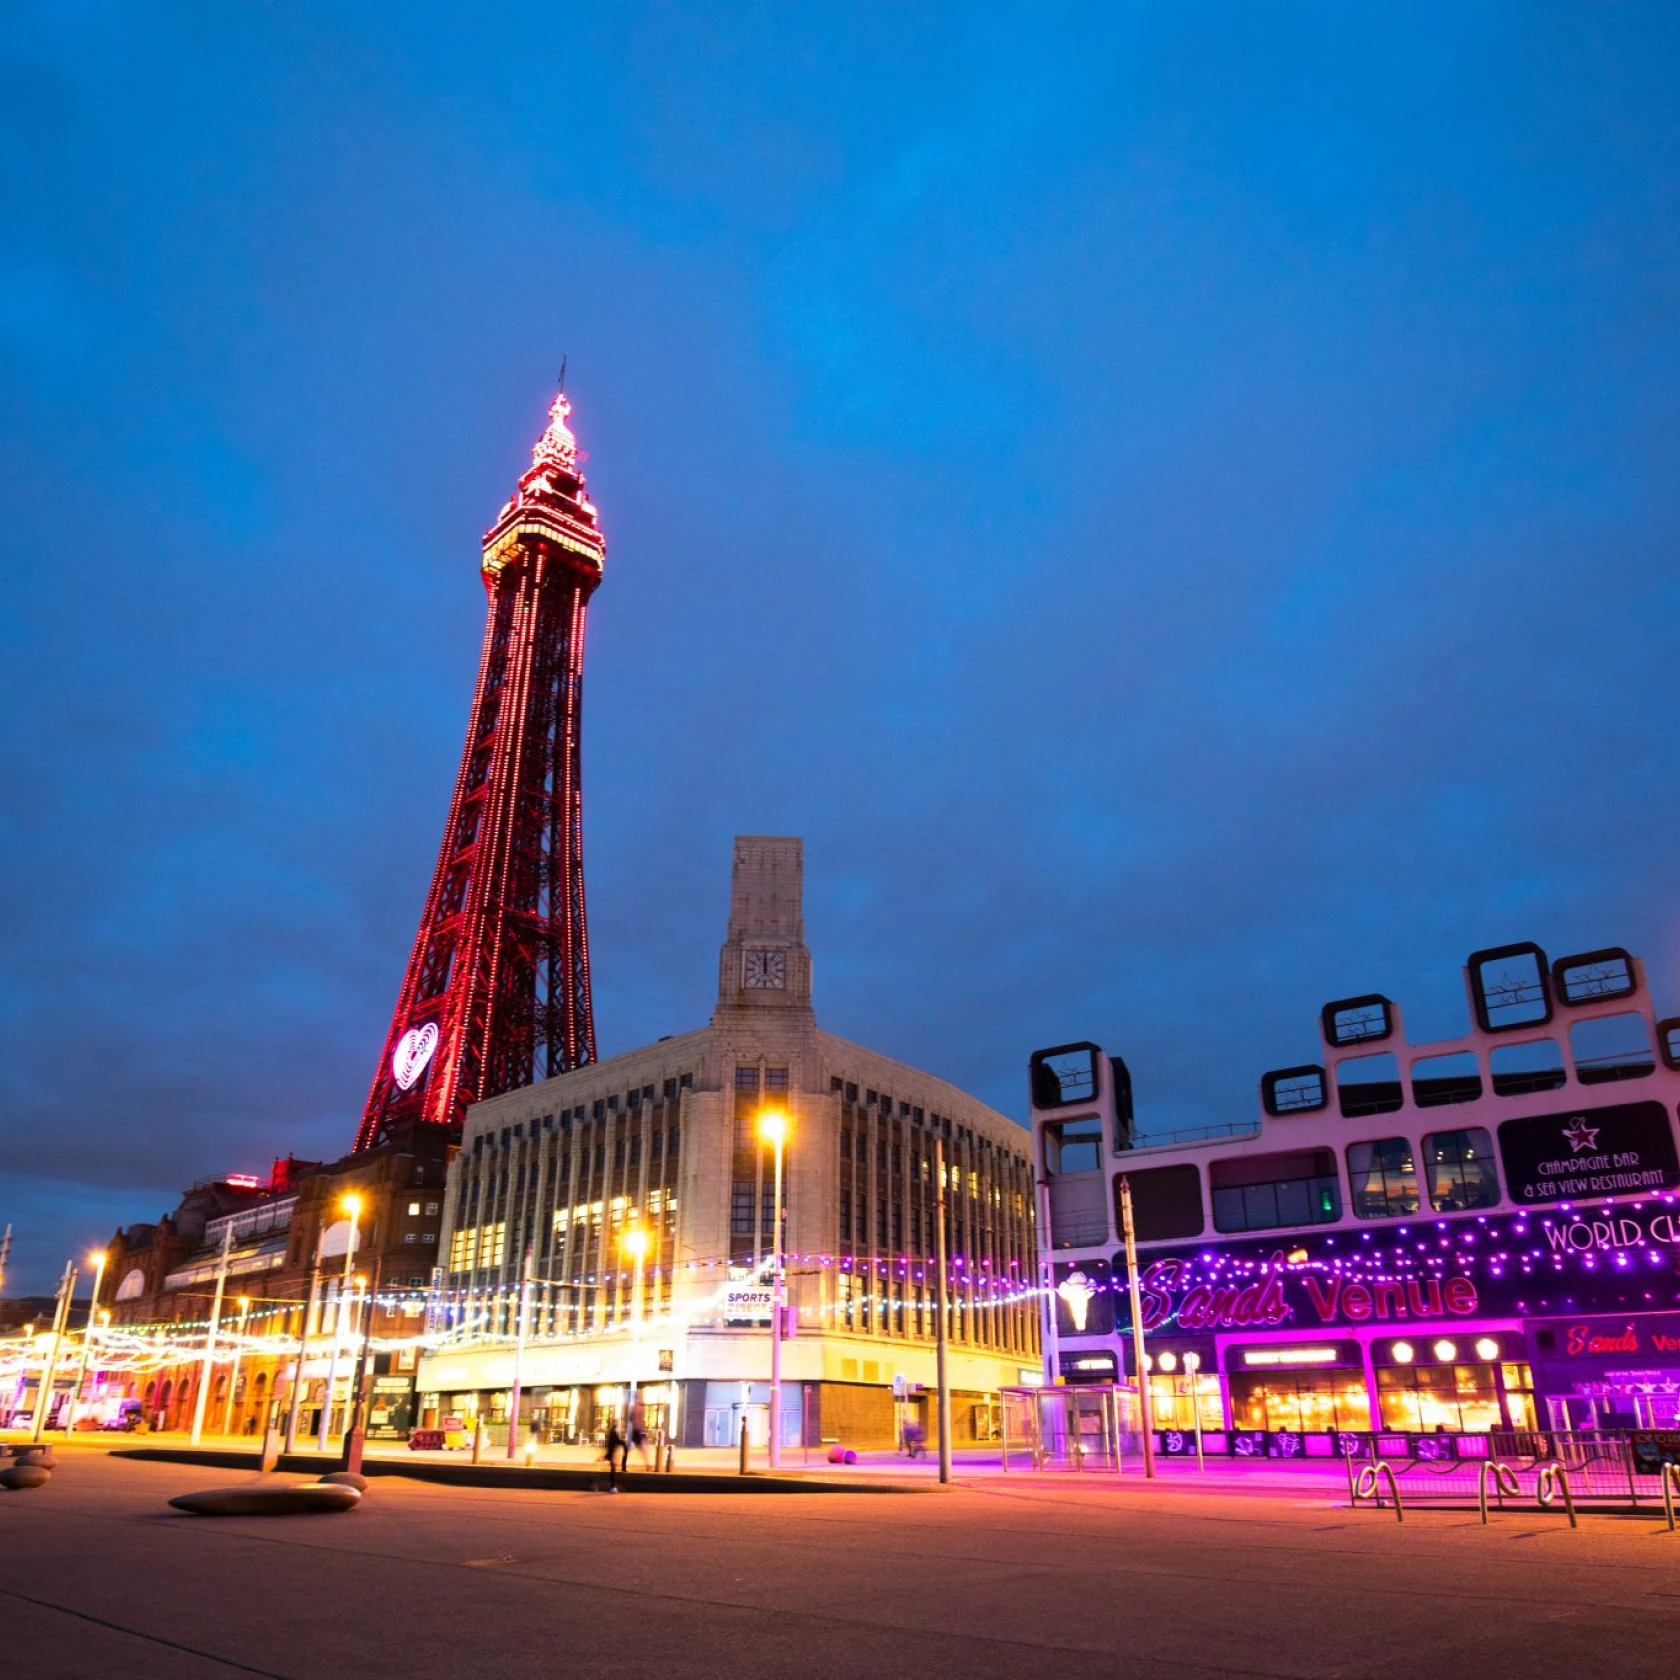 Valbeveiliging op The Blackpool Tower UK